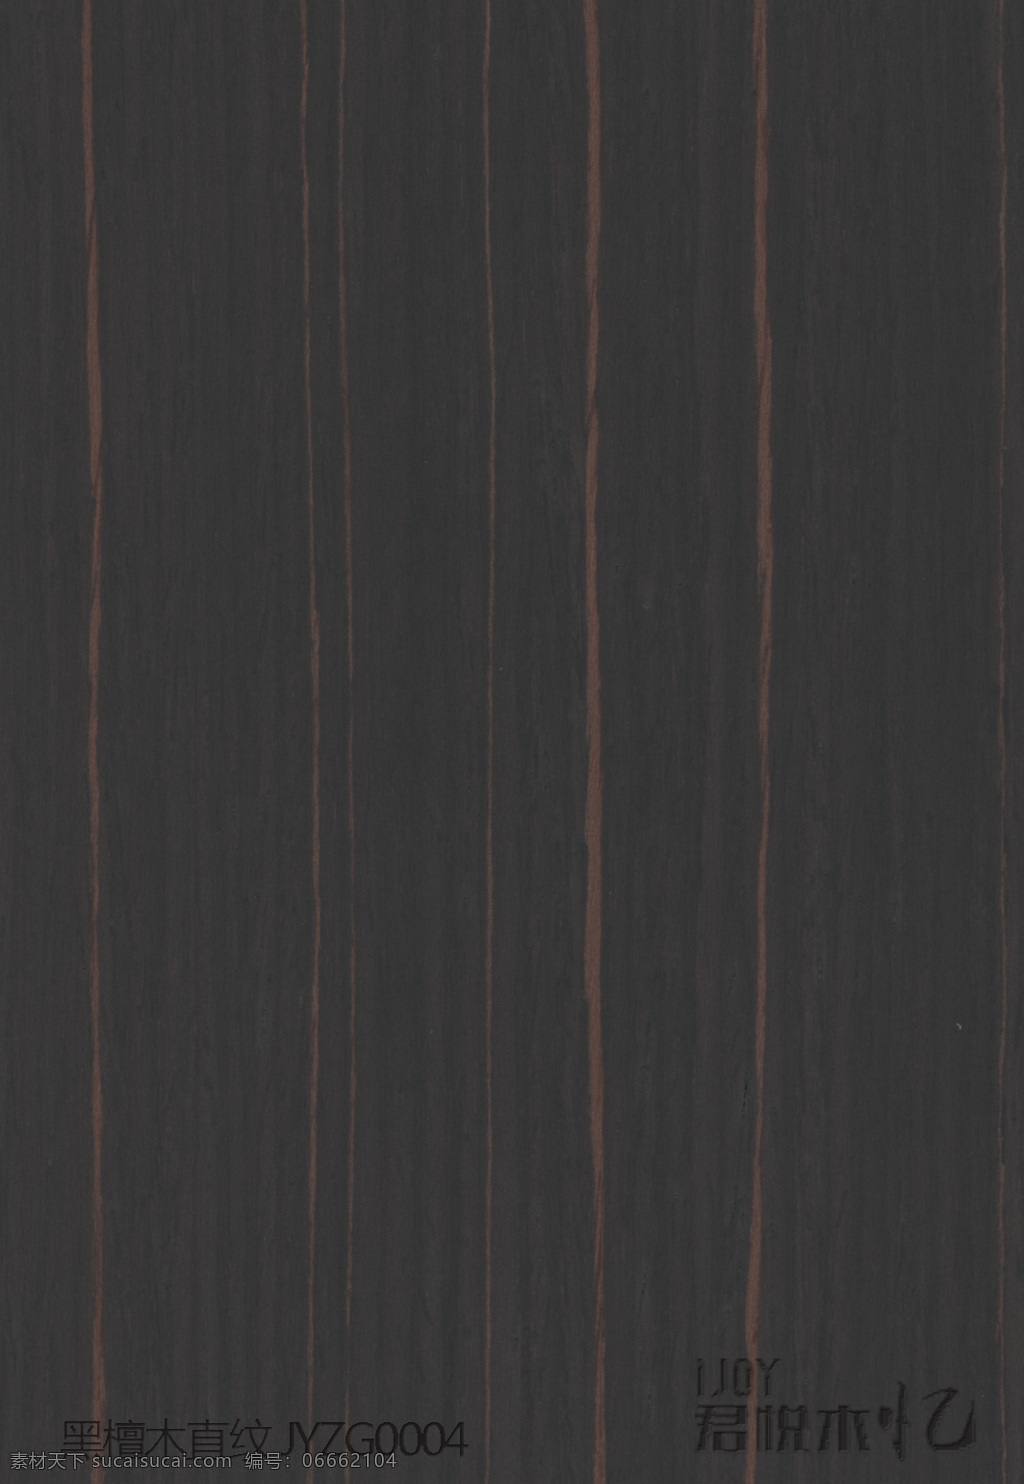 ijoy 黑檀木直纹 jyzg0004 君悦木忆 木皮板装修板 木饰面 木纹纹理 高清纹理大图 护墙板装修 柜子电视背景 吊顶木材板材 uv板 免漆板素材 底纹边框 其他素材